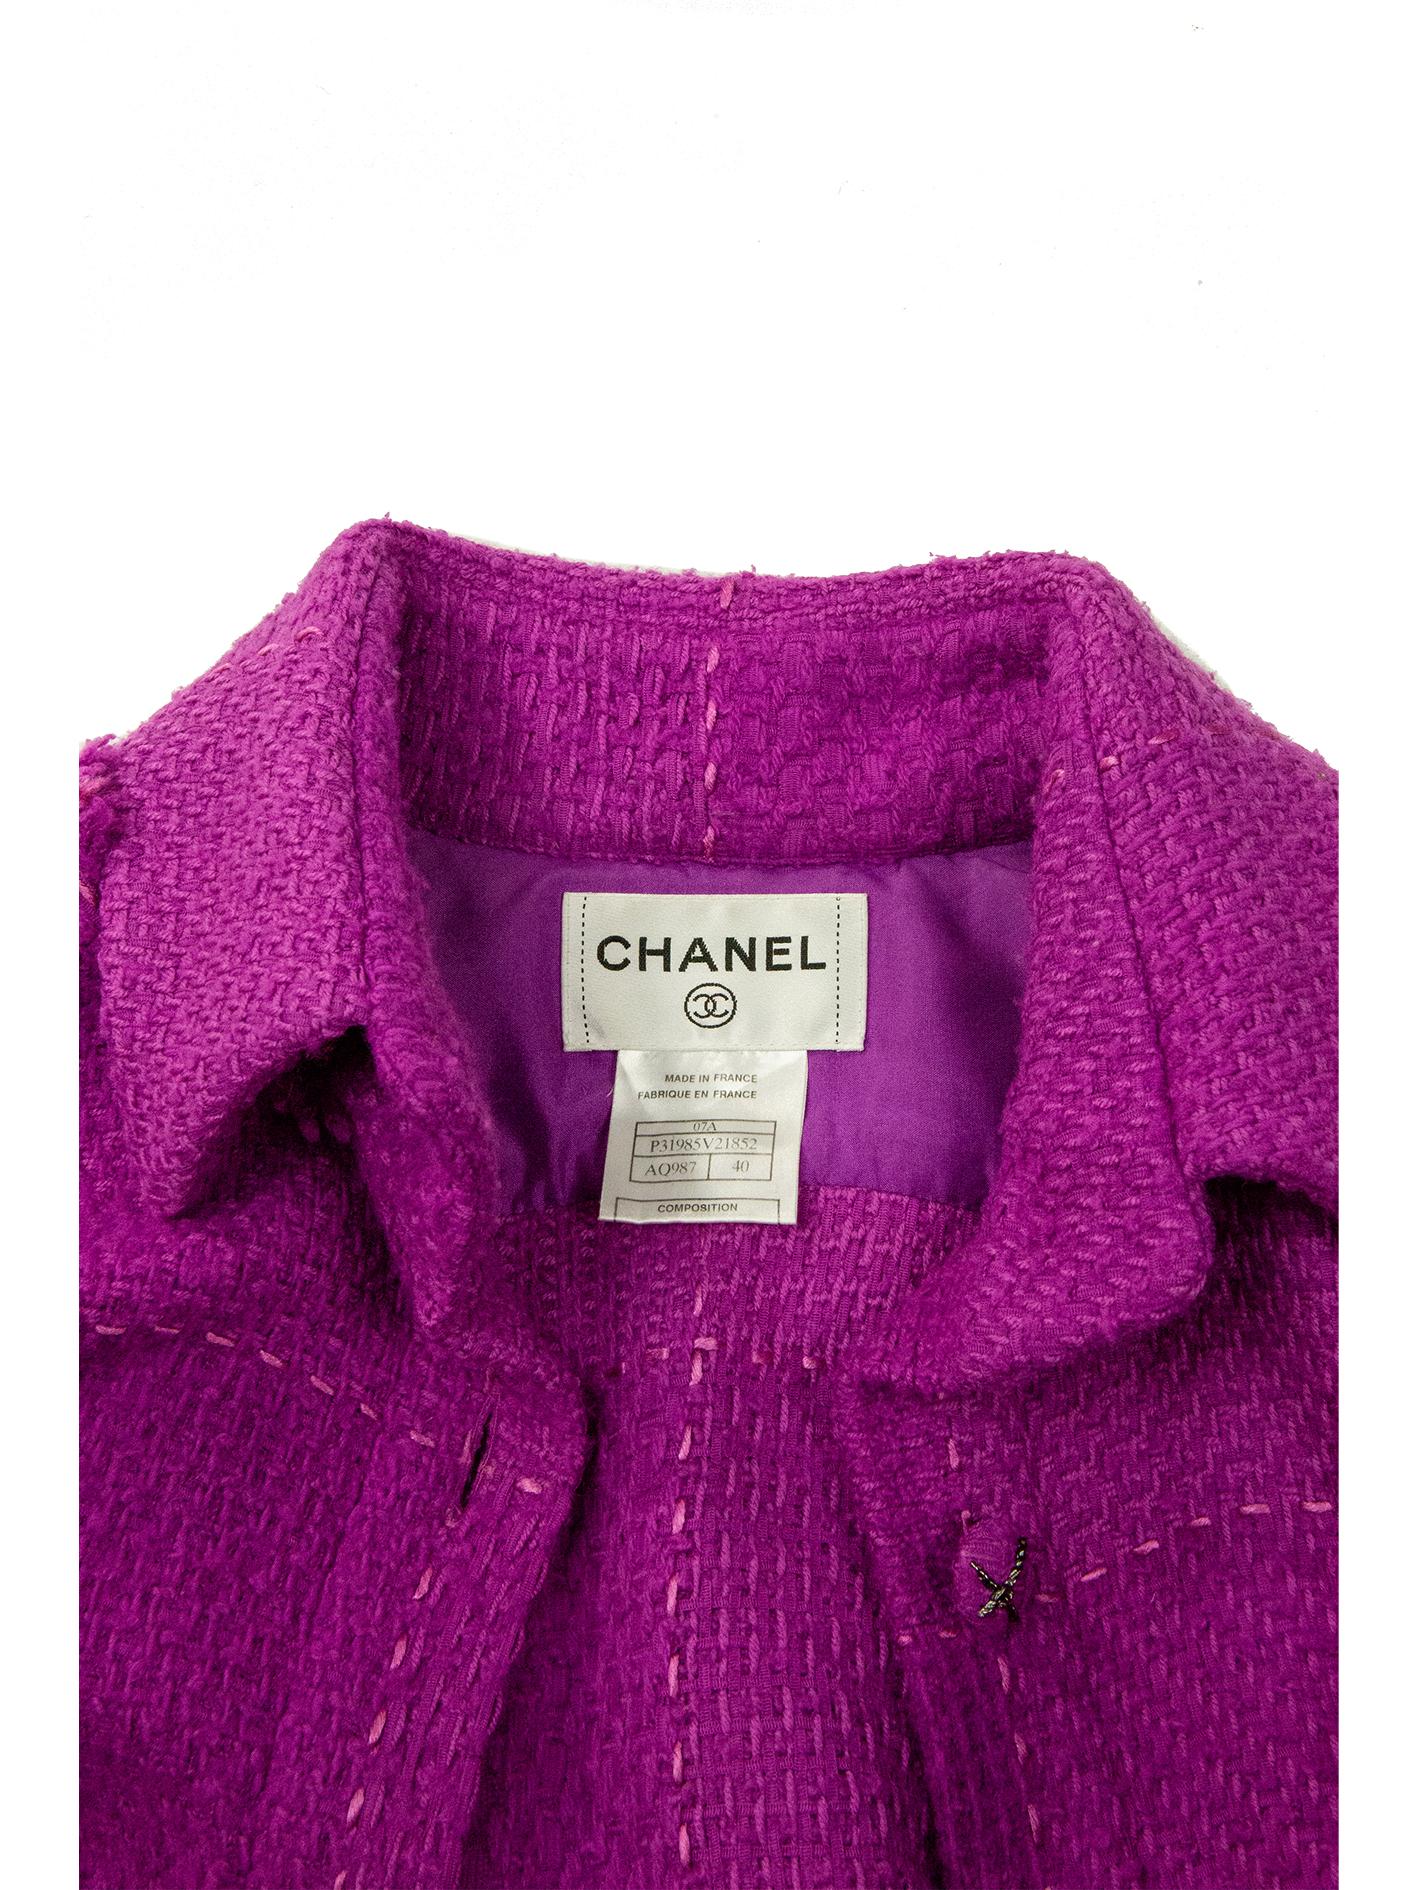 Chanel Autumn 2007 Magenta Tweed Coat 2